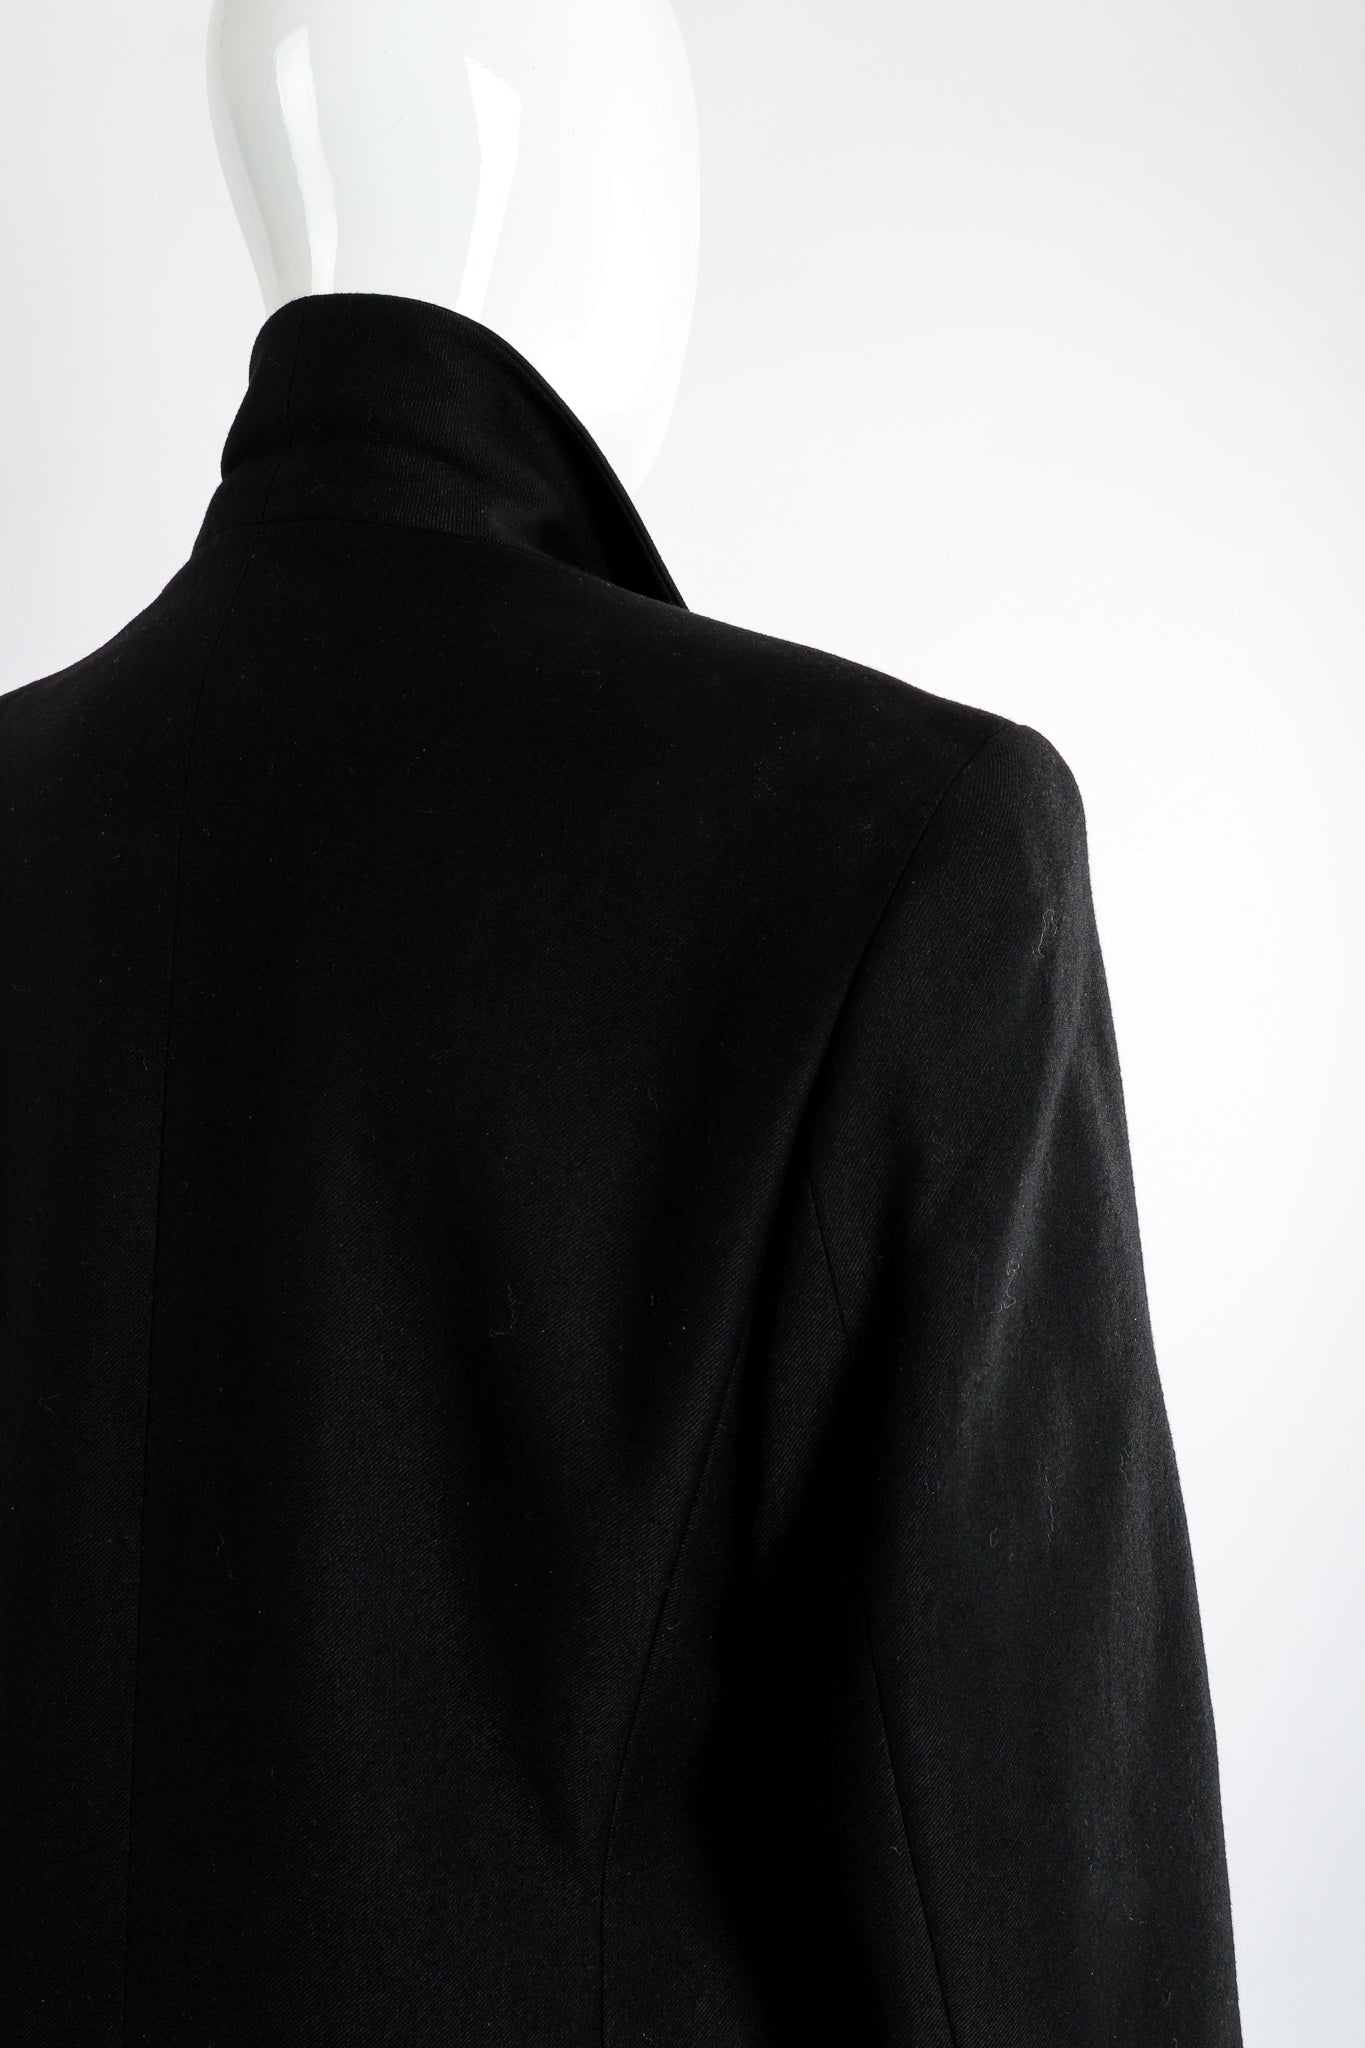 Vintage Gianfranco Ferre Leather Macrame Boyfriend Jacket on Mannequin back shoulder at Recess LA